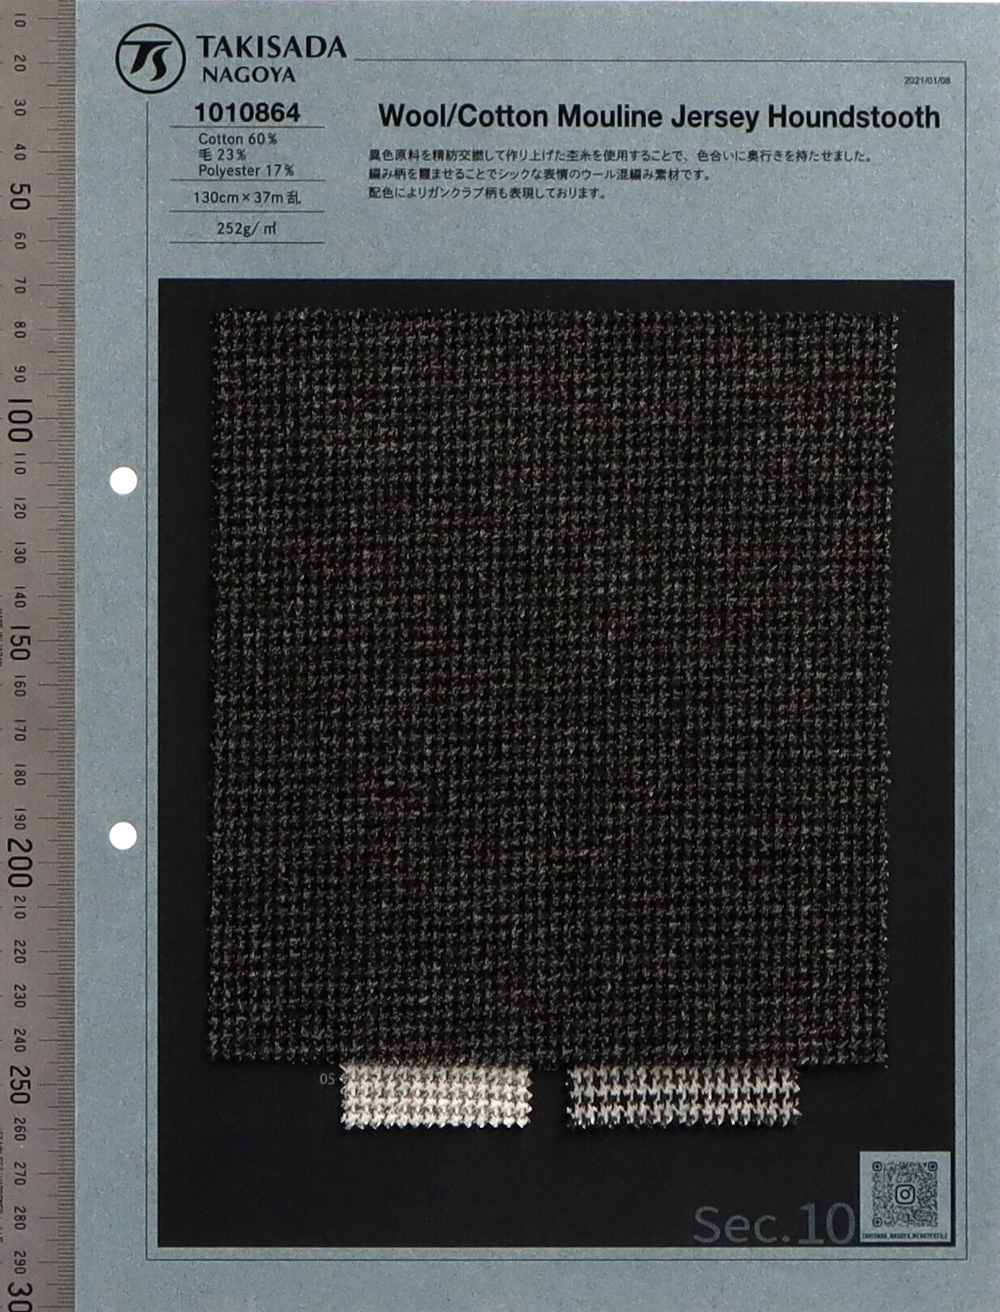 1010864 Melange-Jersey Aus Wolle Und Baumwolle Mit Hahnentrittmuster[Textilgewebe] Takisada Nagoya